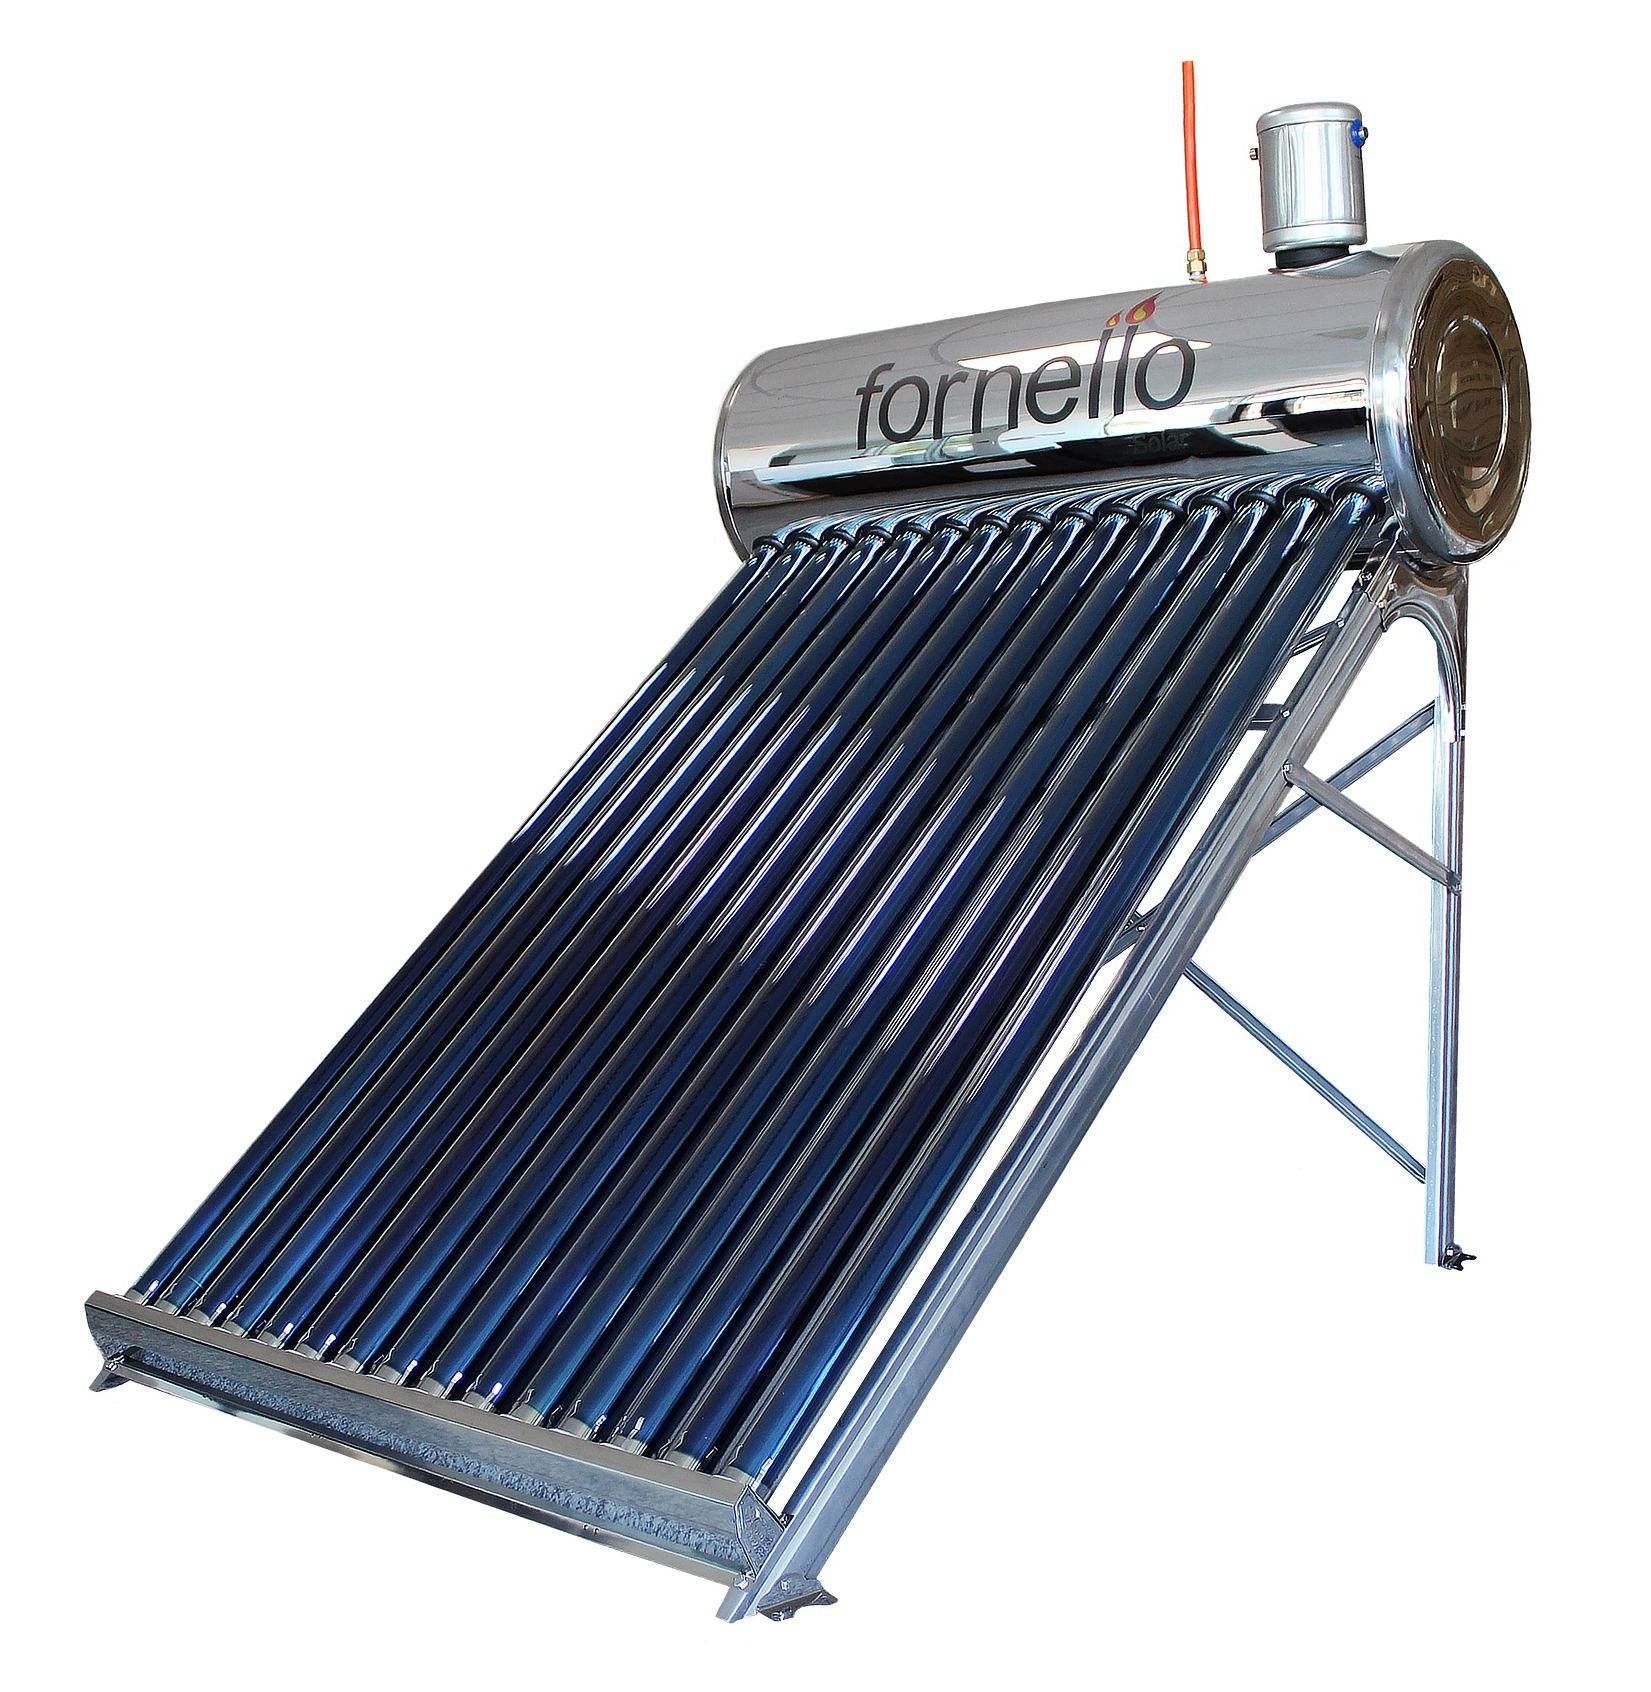 Panou solar nepresurizat Fornello pentru producere apa calda, cu rezervor inox 150 litri si 18 tuburi vidate Fornello imagine noua